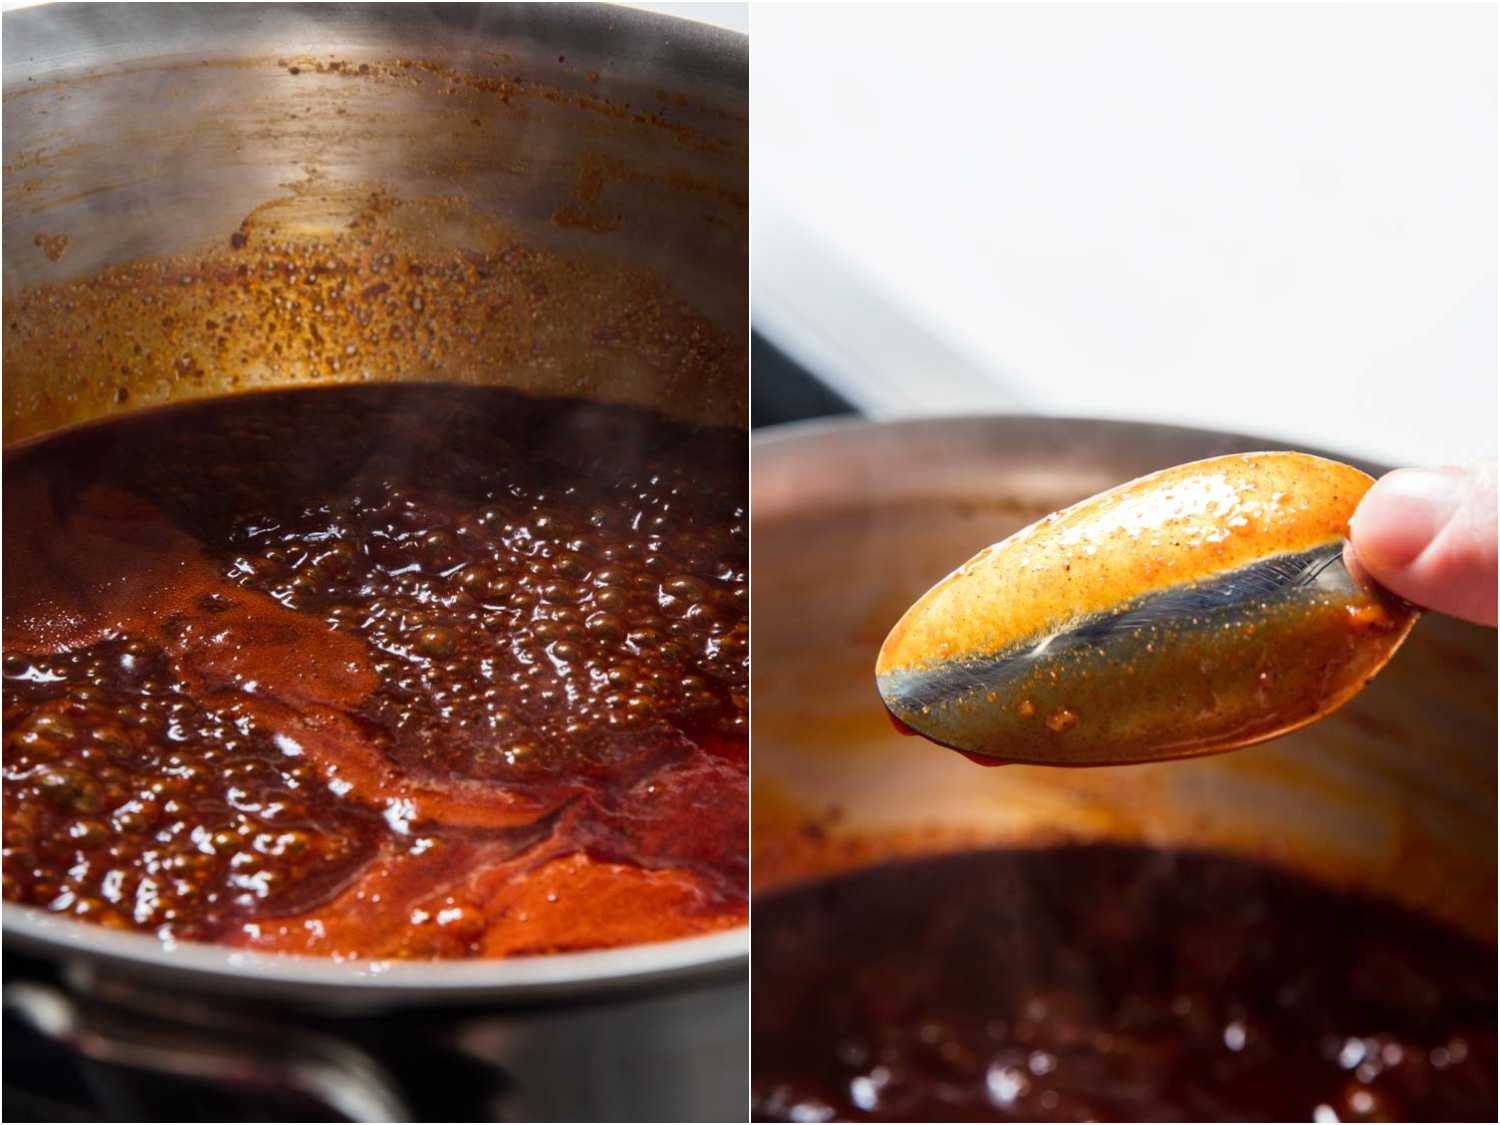 小火煨着的红酱和涂了油的勺子并排的照片gydF4y2Ba